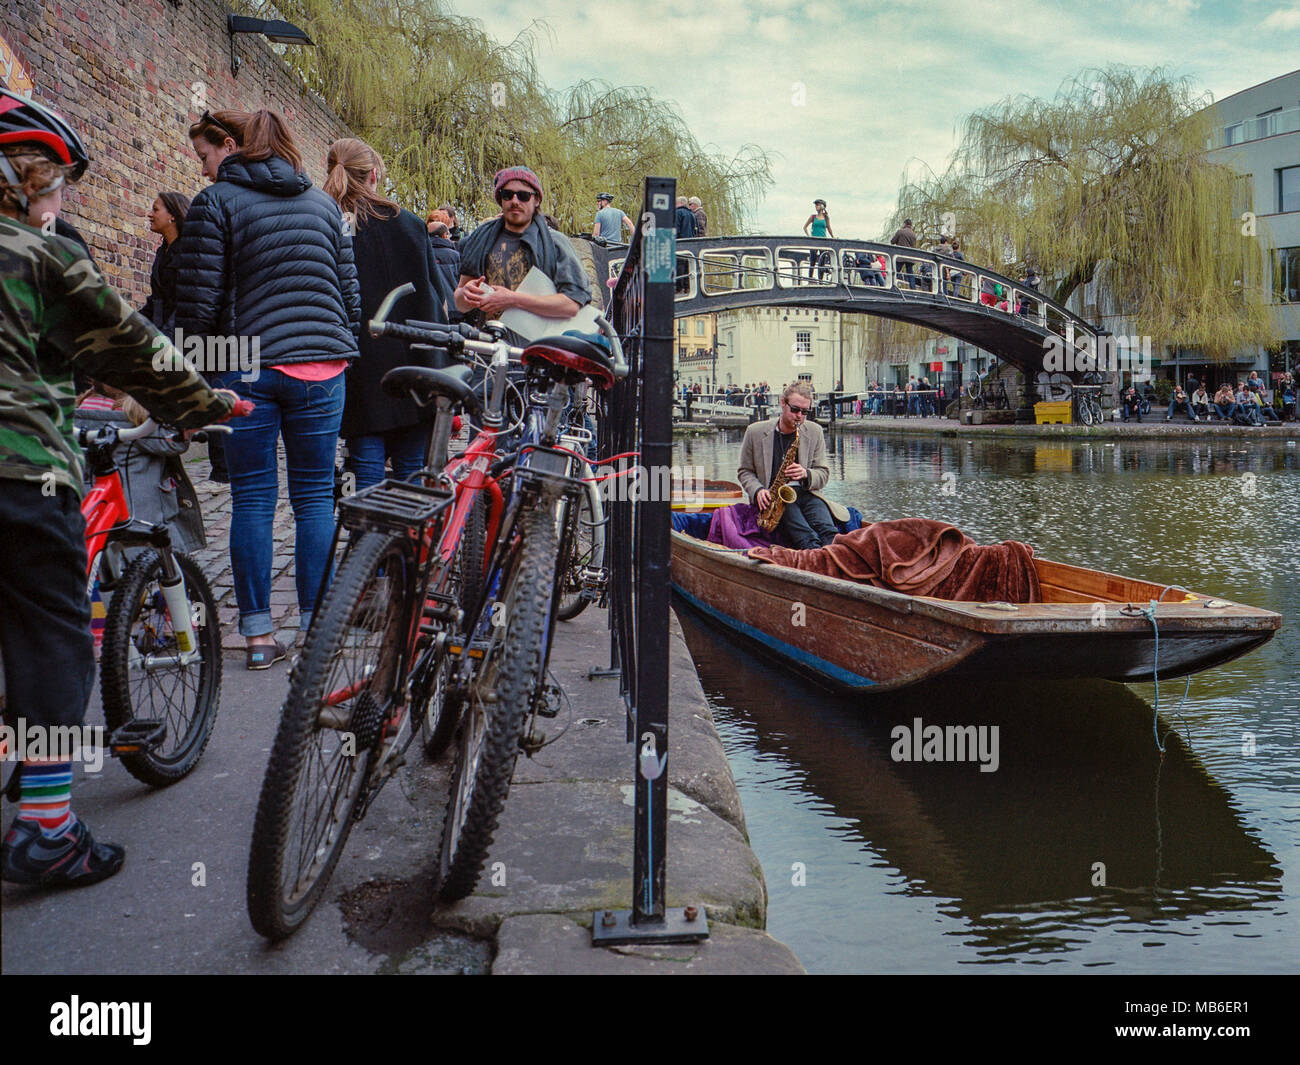 Camden Lock, Regent's Canal, près du célèbre marché de Londres, un musicien ambulant joue du saxophone sur un punt dans cette destination touristique populaire. Banque D'Images